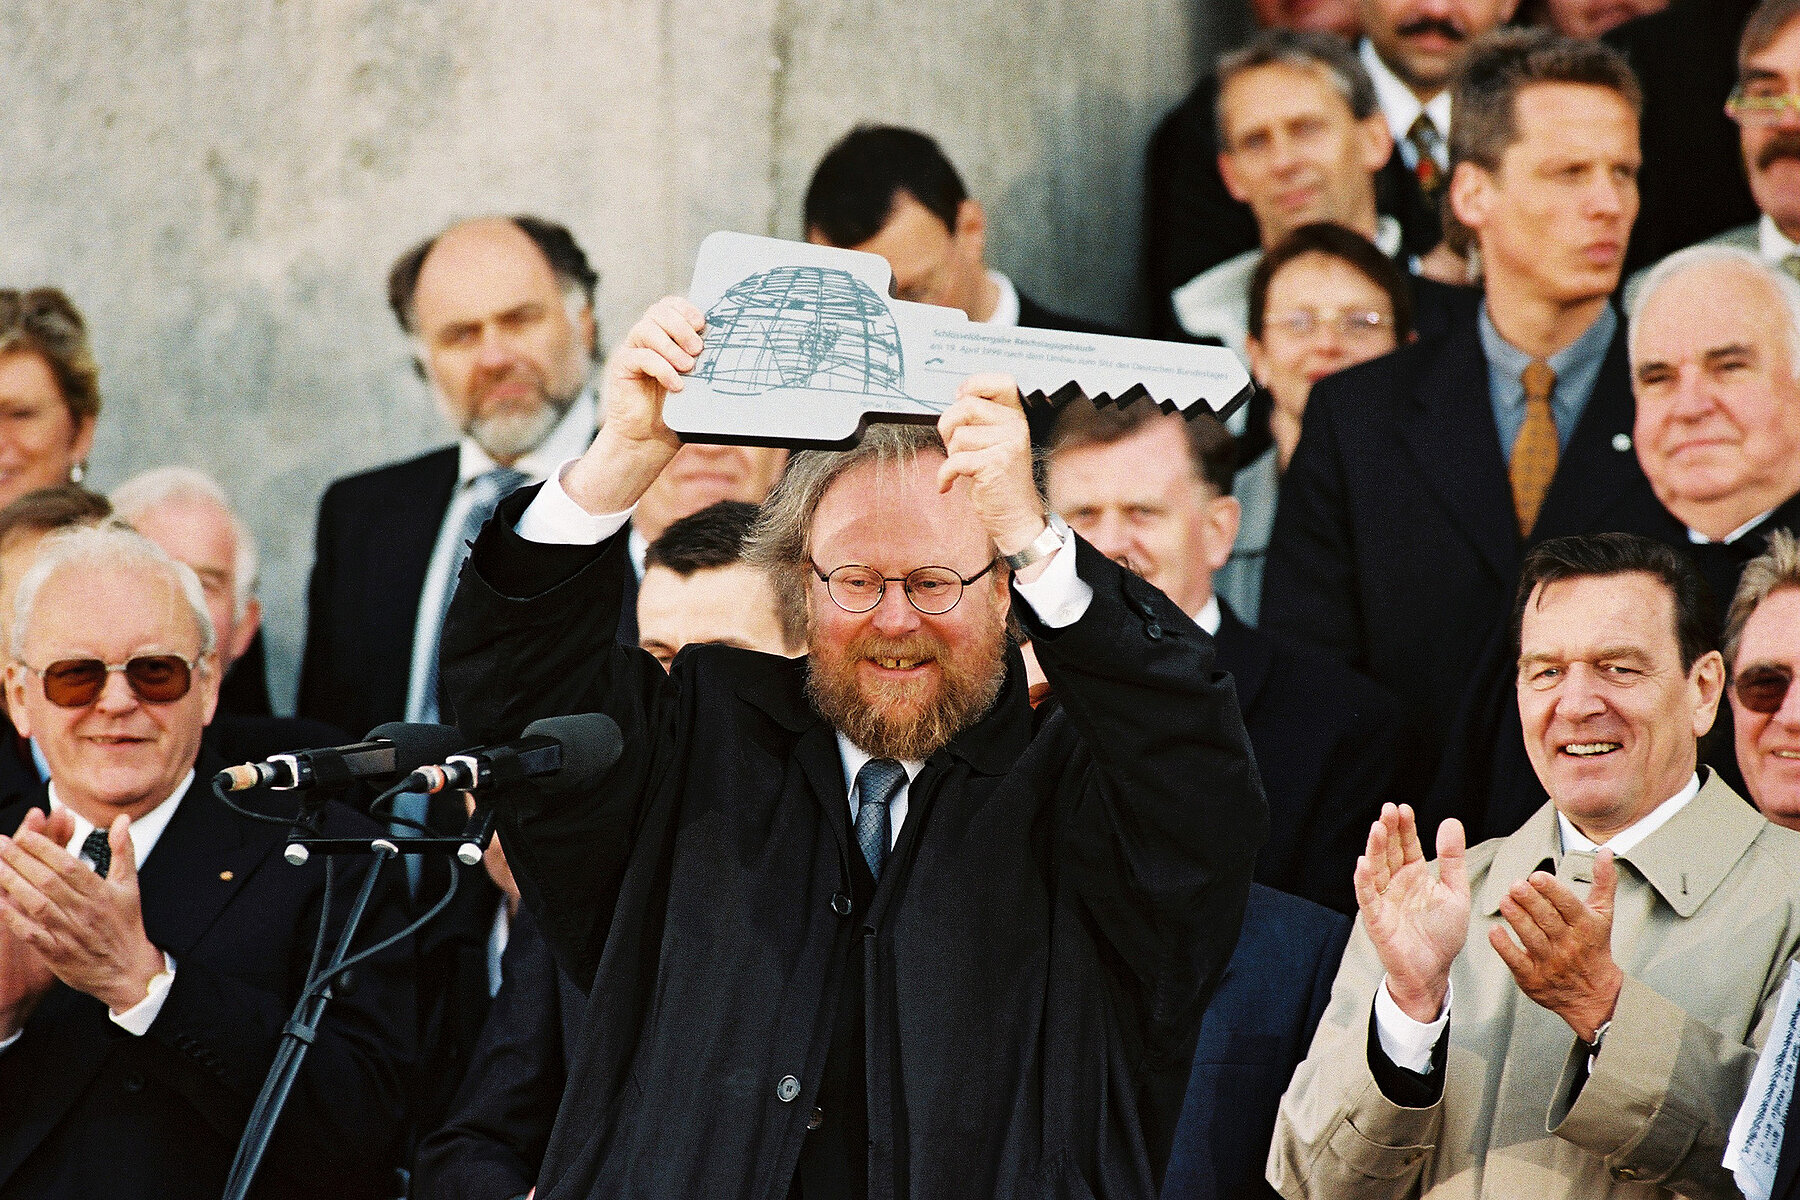 Wolfgang Thierse in der Bildmitte hält einen übergroßen Schlüssel. Er ist umgeben von weiteren Politikern wie Helmut Kohl und Gerhard Schröder. 